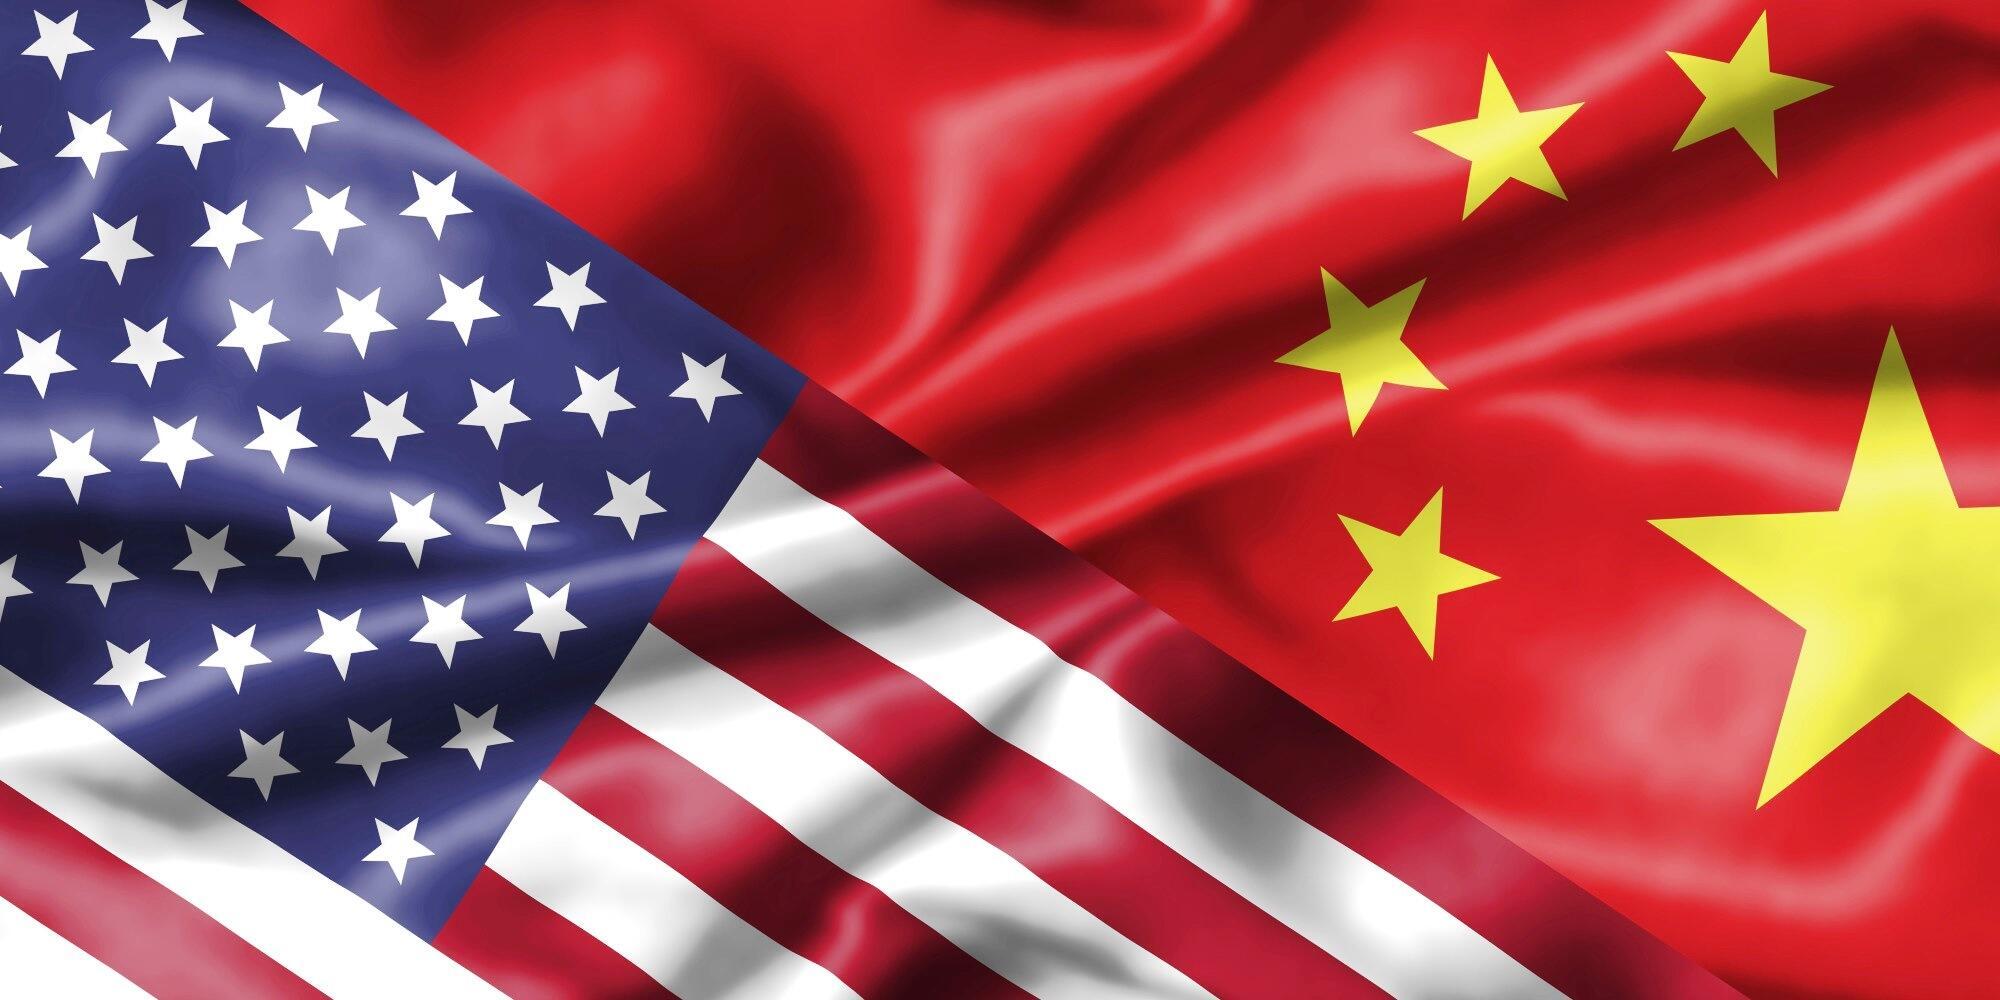 Handelskriget mellan USA och Kina kan fortfarande väga tungt